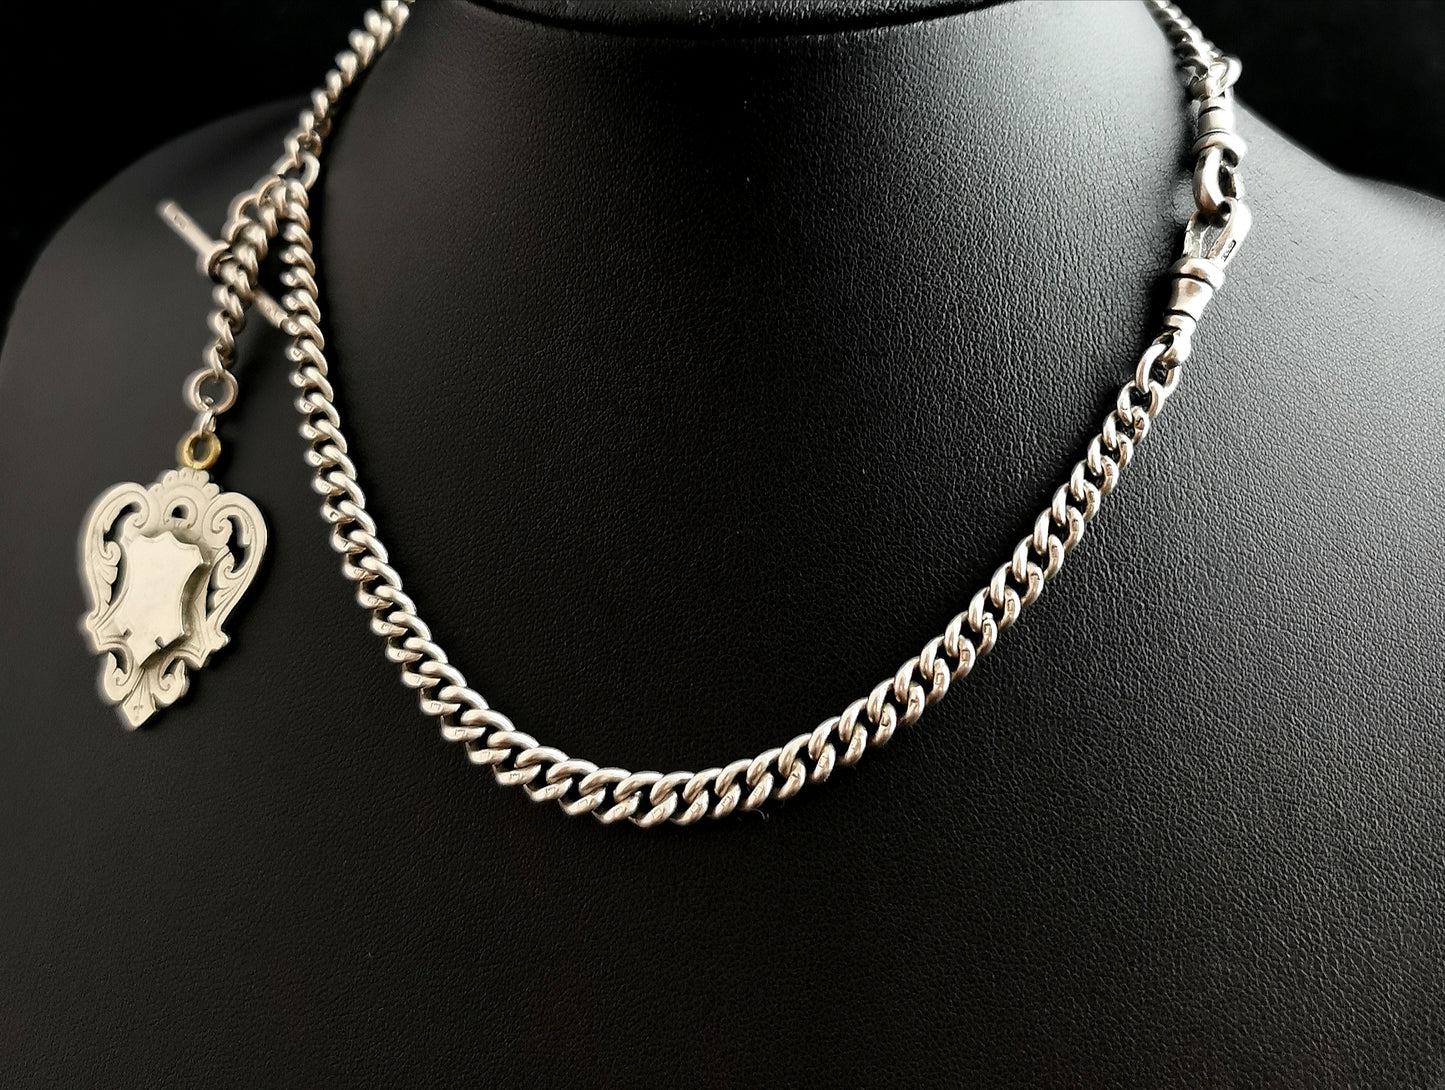 Antique silver albert chain, Edwardian watch chain